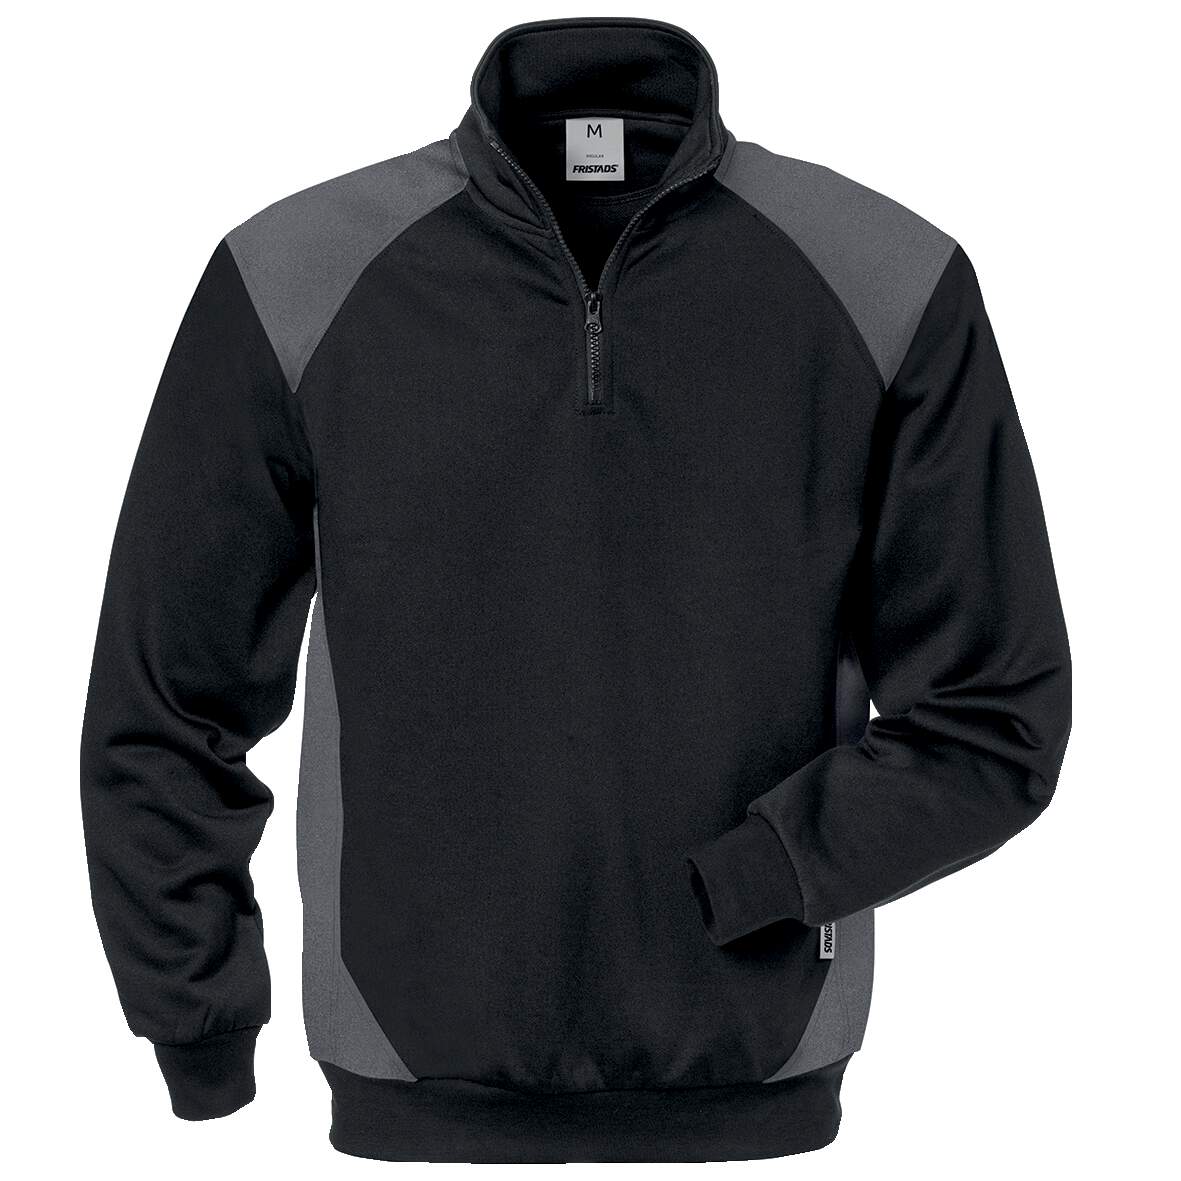 1254325 - Sweatshirt schwarz/grau Gr.XS FUSION 7048